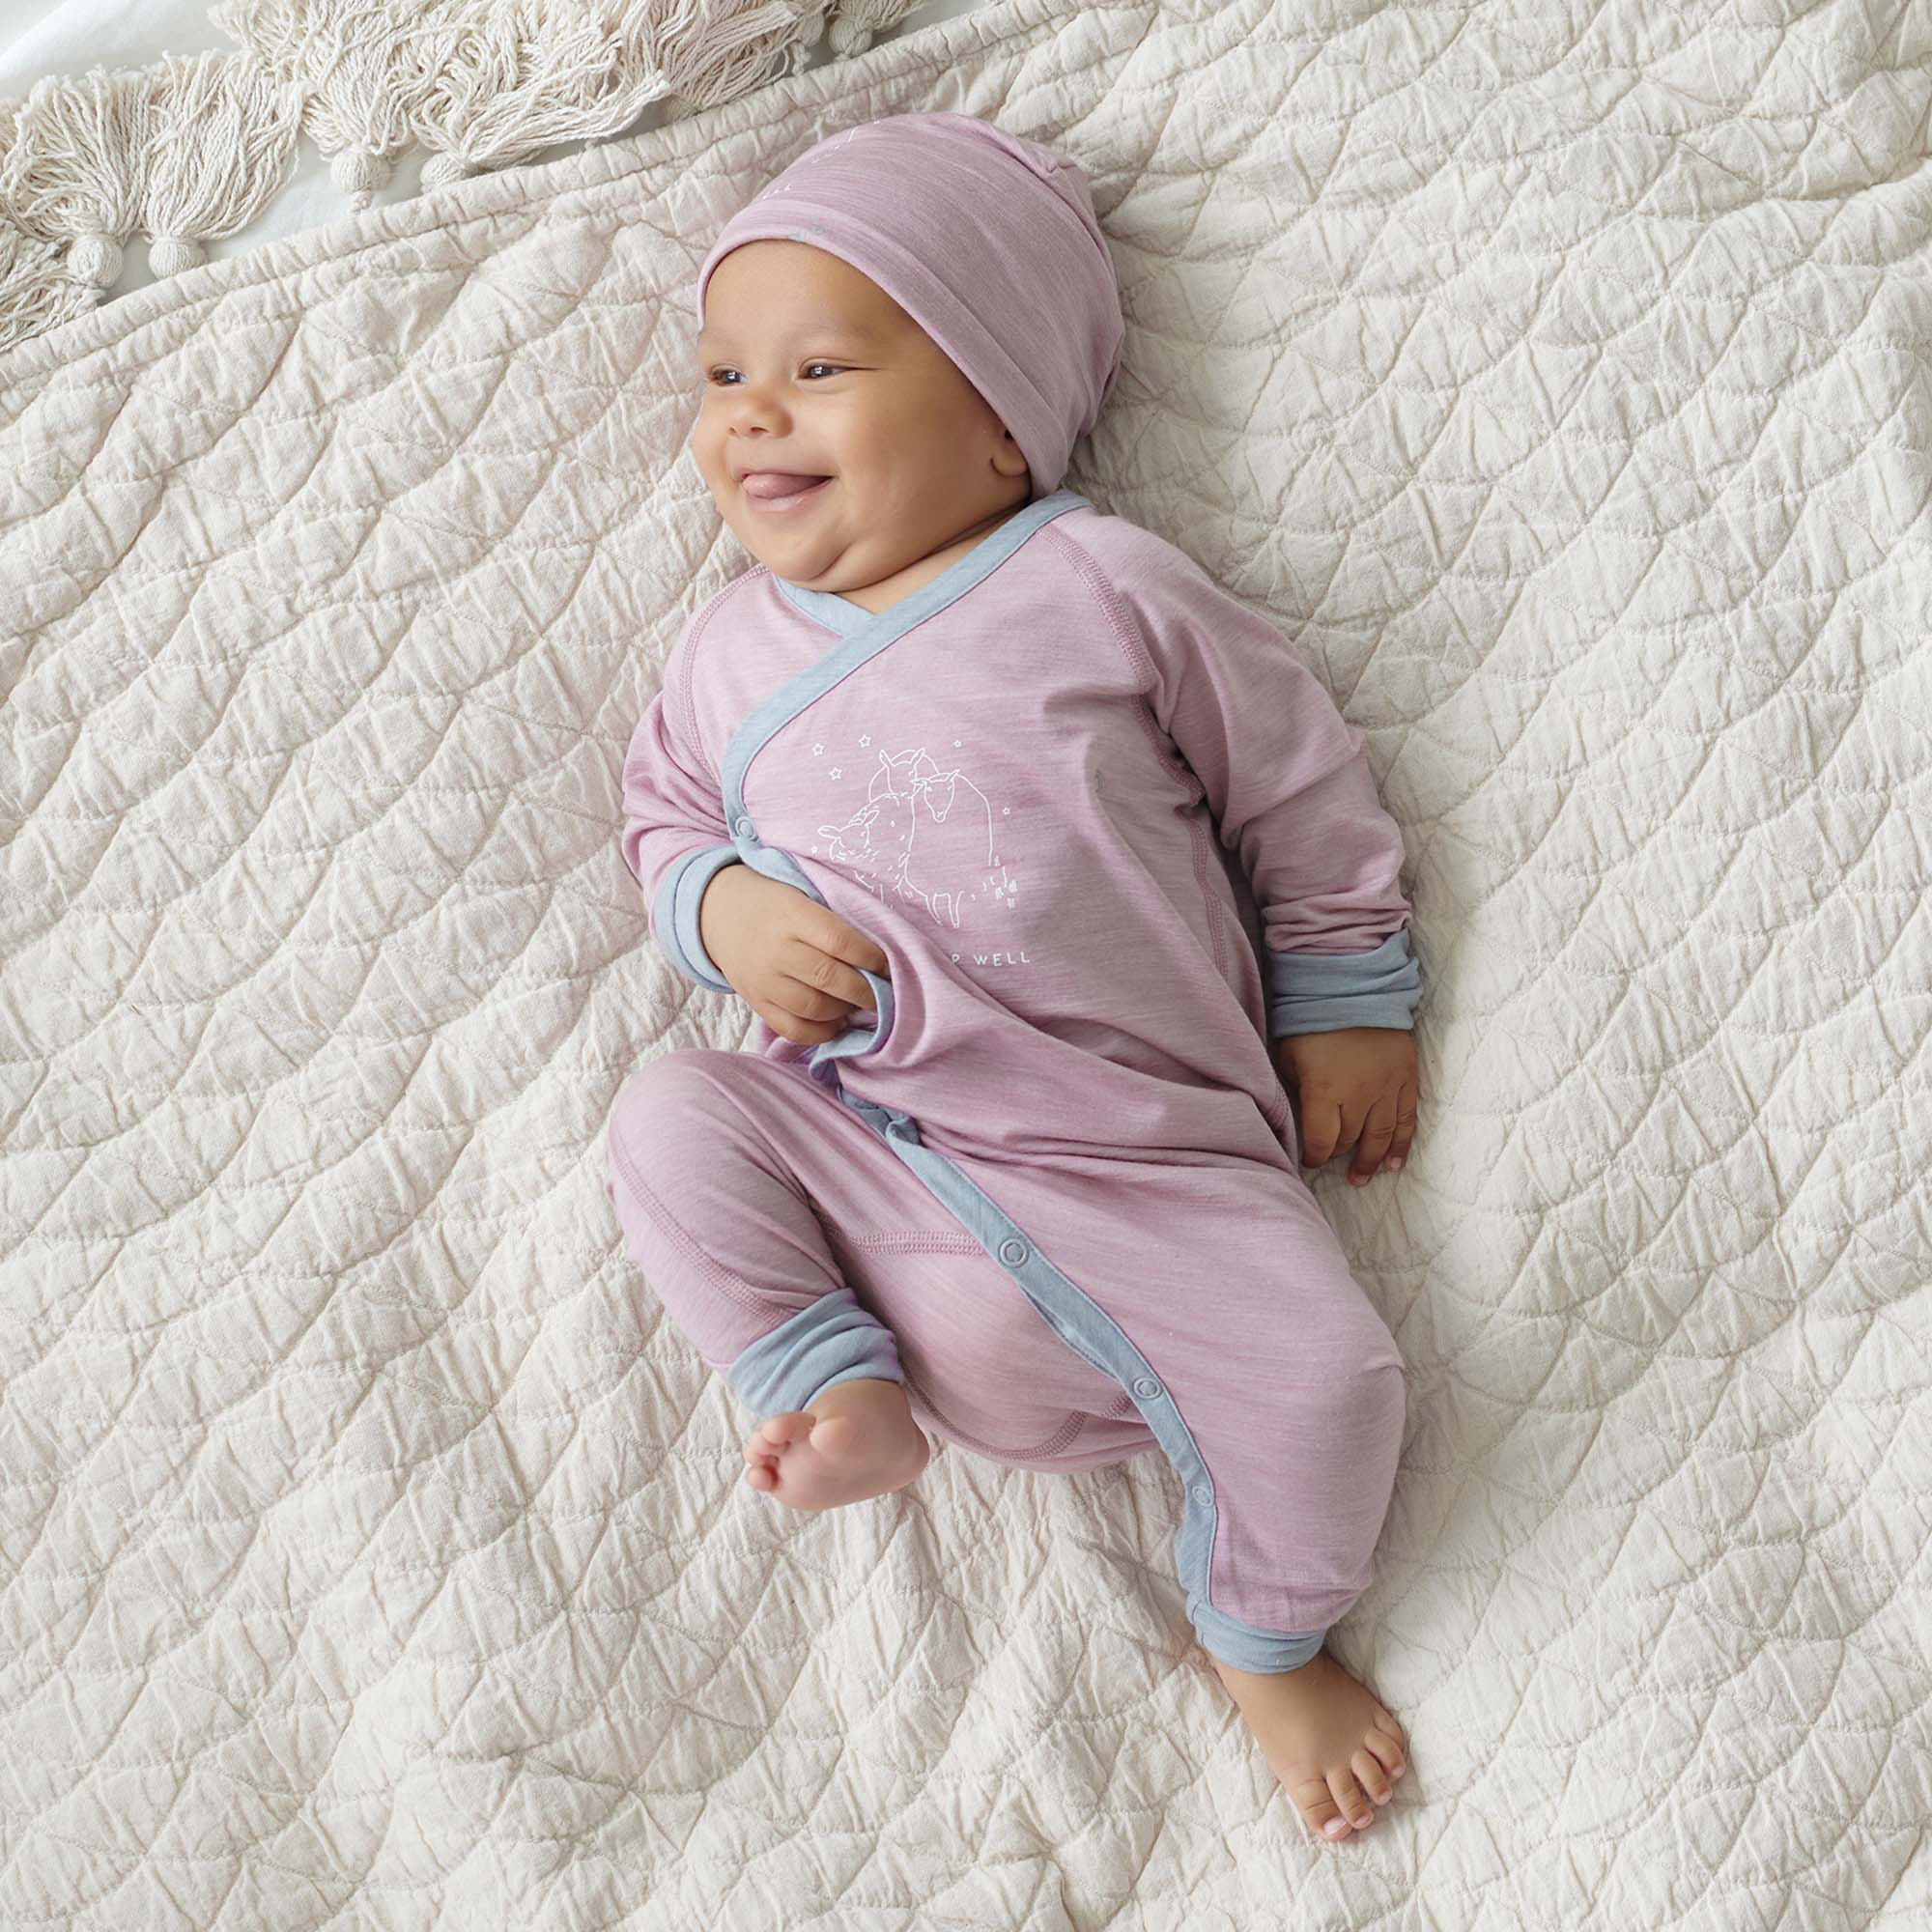 Dagsmejan Baby Schlafanzug stay warm, Nattwell ™ Sleep Tech, Dusty pink melange